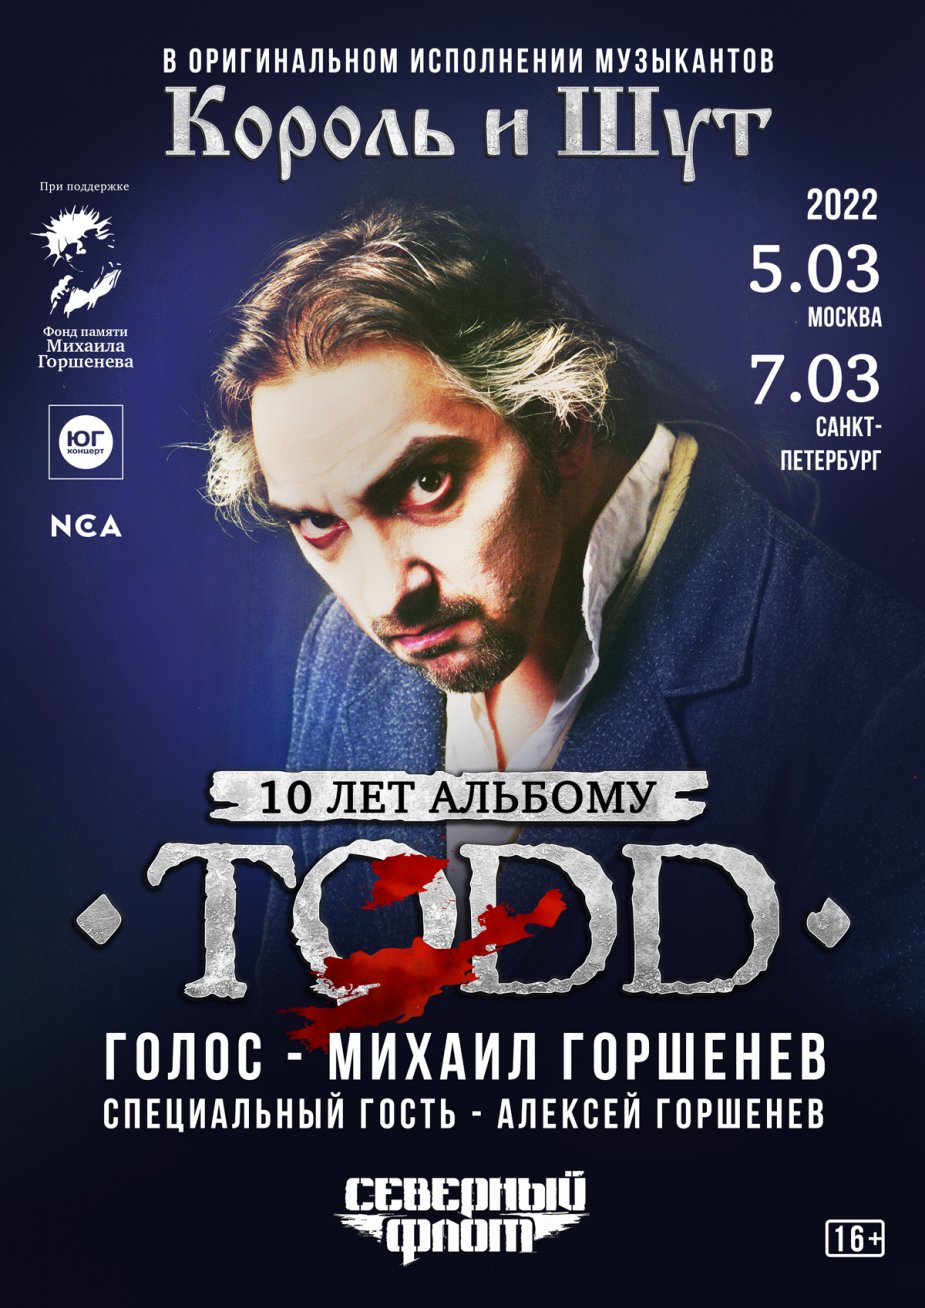 Грандиозный тур "TODD -10 лет"